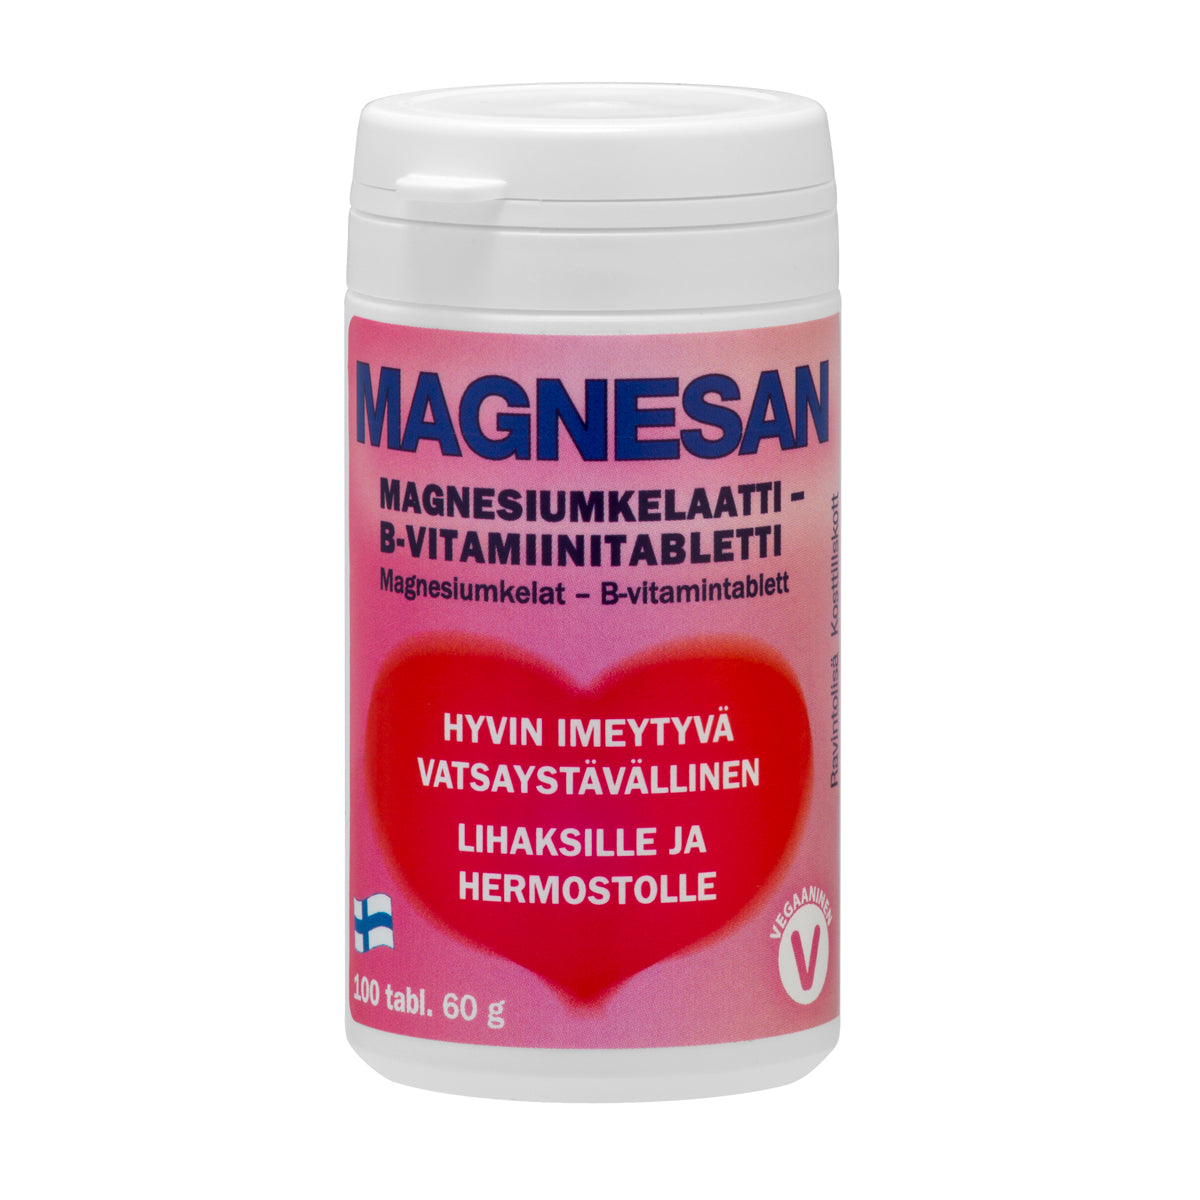 Magnesan - Magnesiumkelaatti - B-vitamiinitabletti 100 tabl. - poistuu